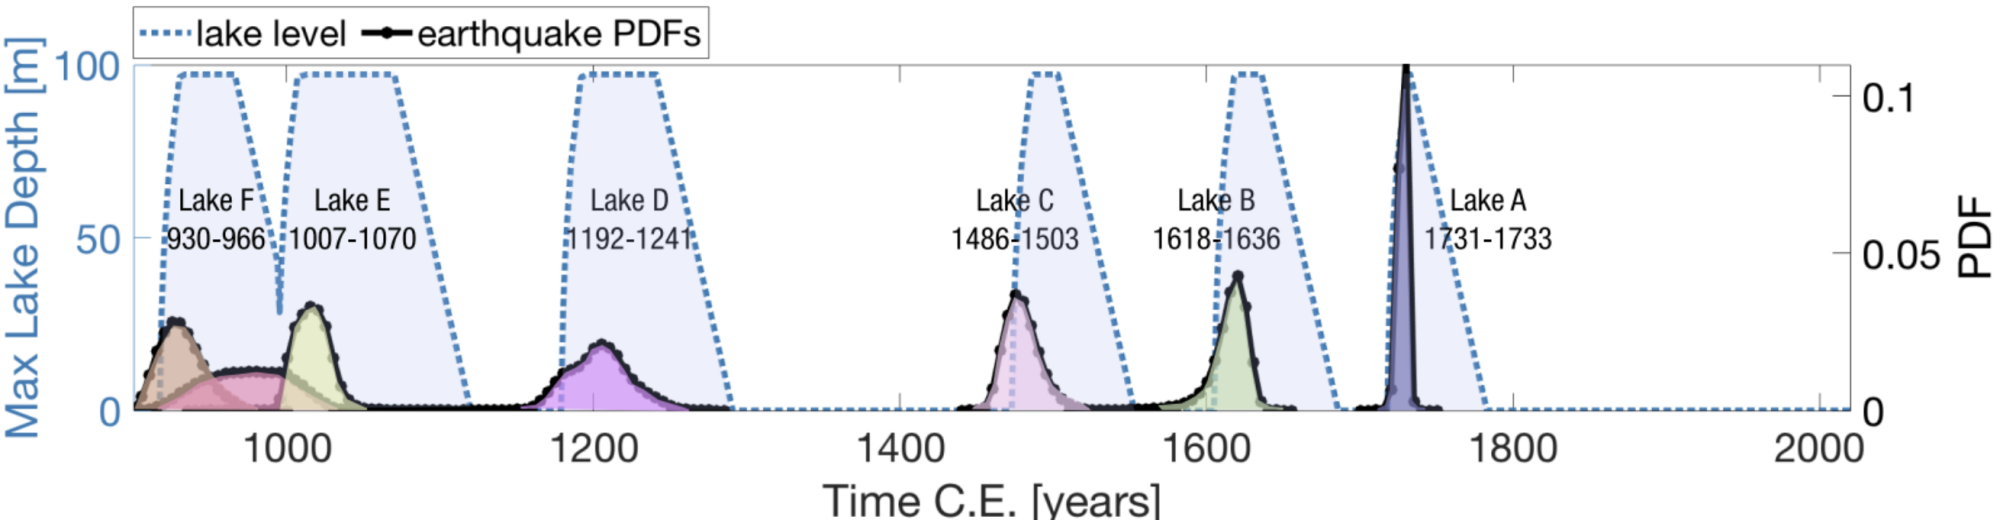 Un graphique montrant quand le lac Cahuilla s'est rempli au cours des mille dernières années.  Les niveaux du lac sont indiqués en bleu clair, tandis que les probabilités temporelles de tremblement de terre correspondantes sont indiquées par les lignes noires en pointillés sous chaque épisode de remplissage du lac.